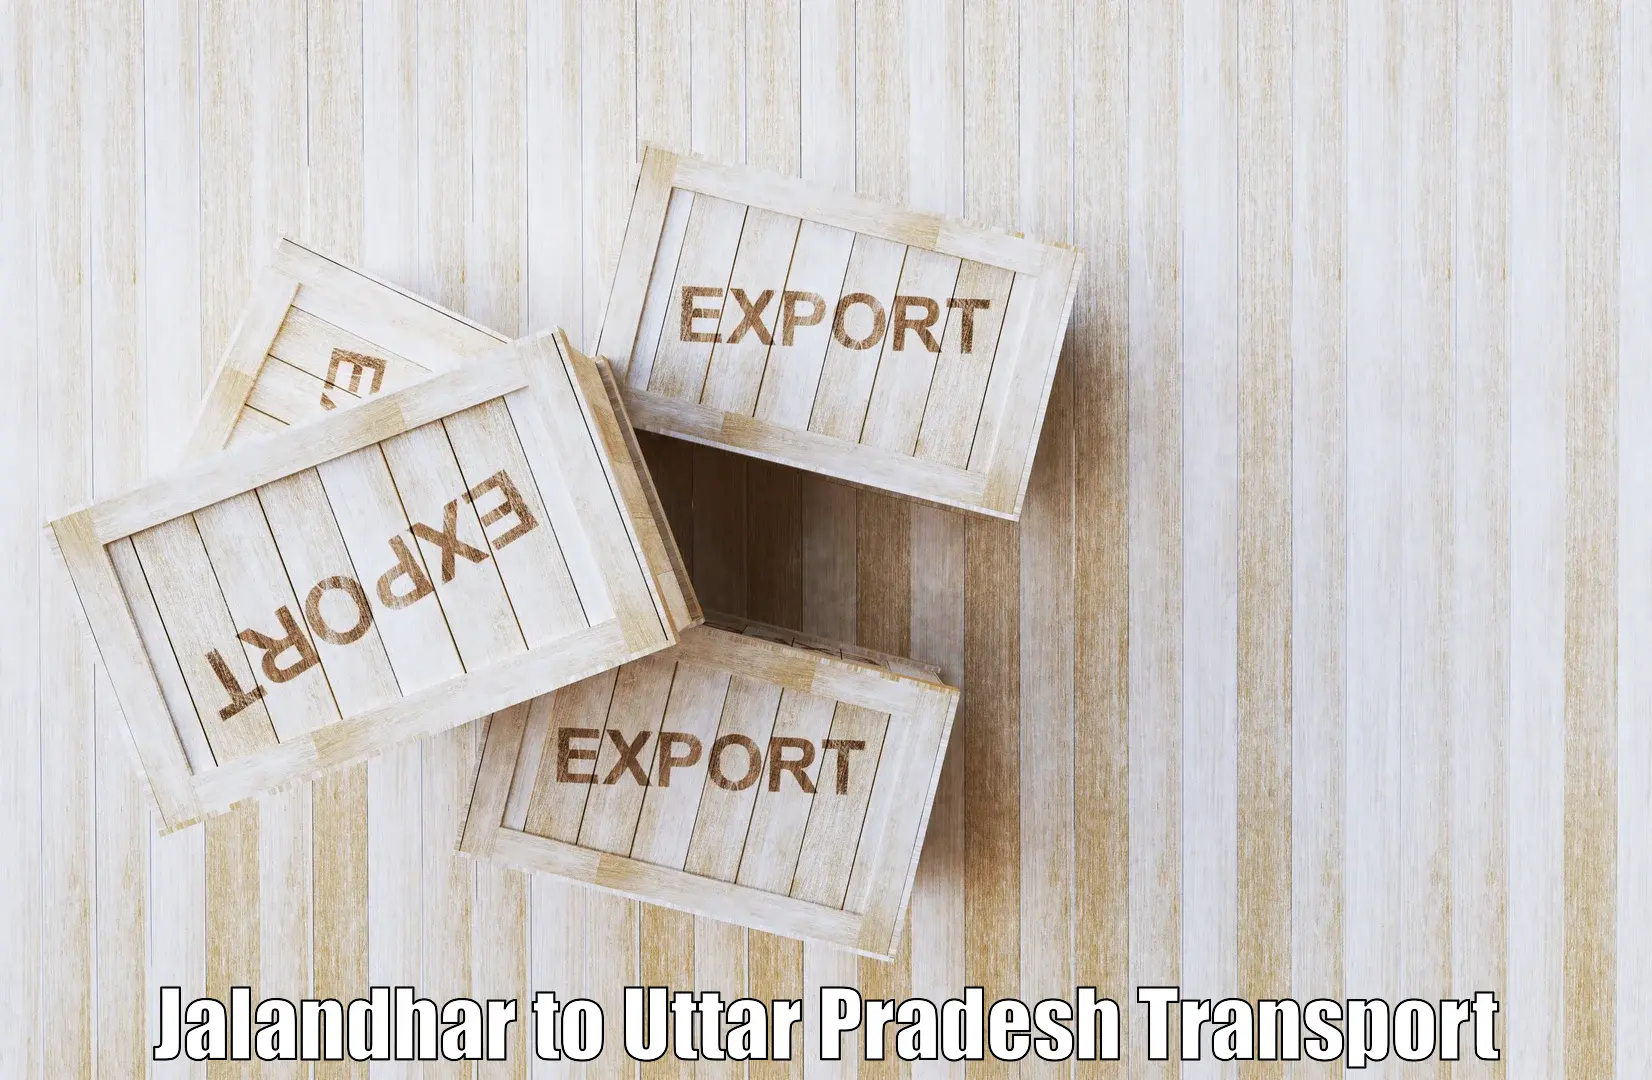 Commercial transport service Jalandhar to Uttar Pradesh